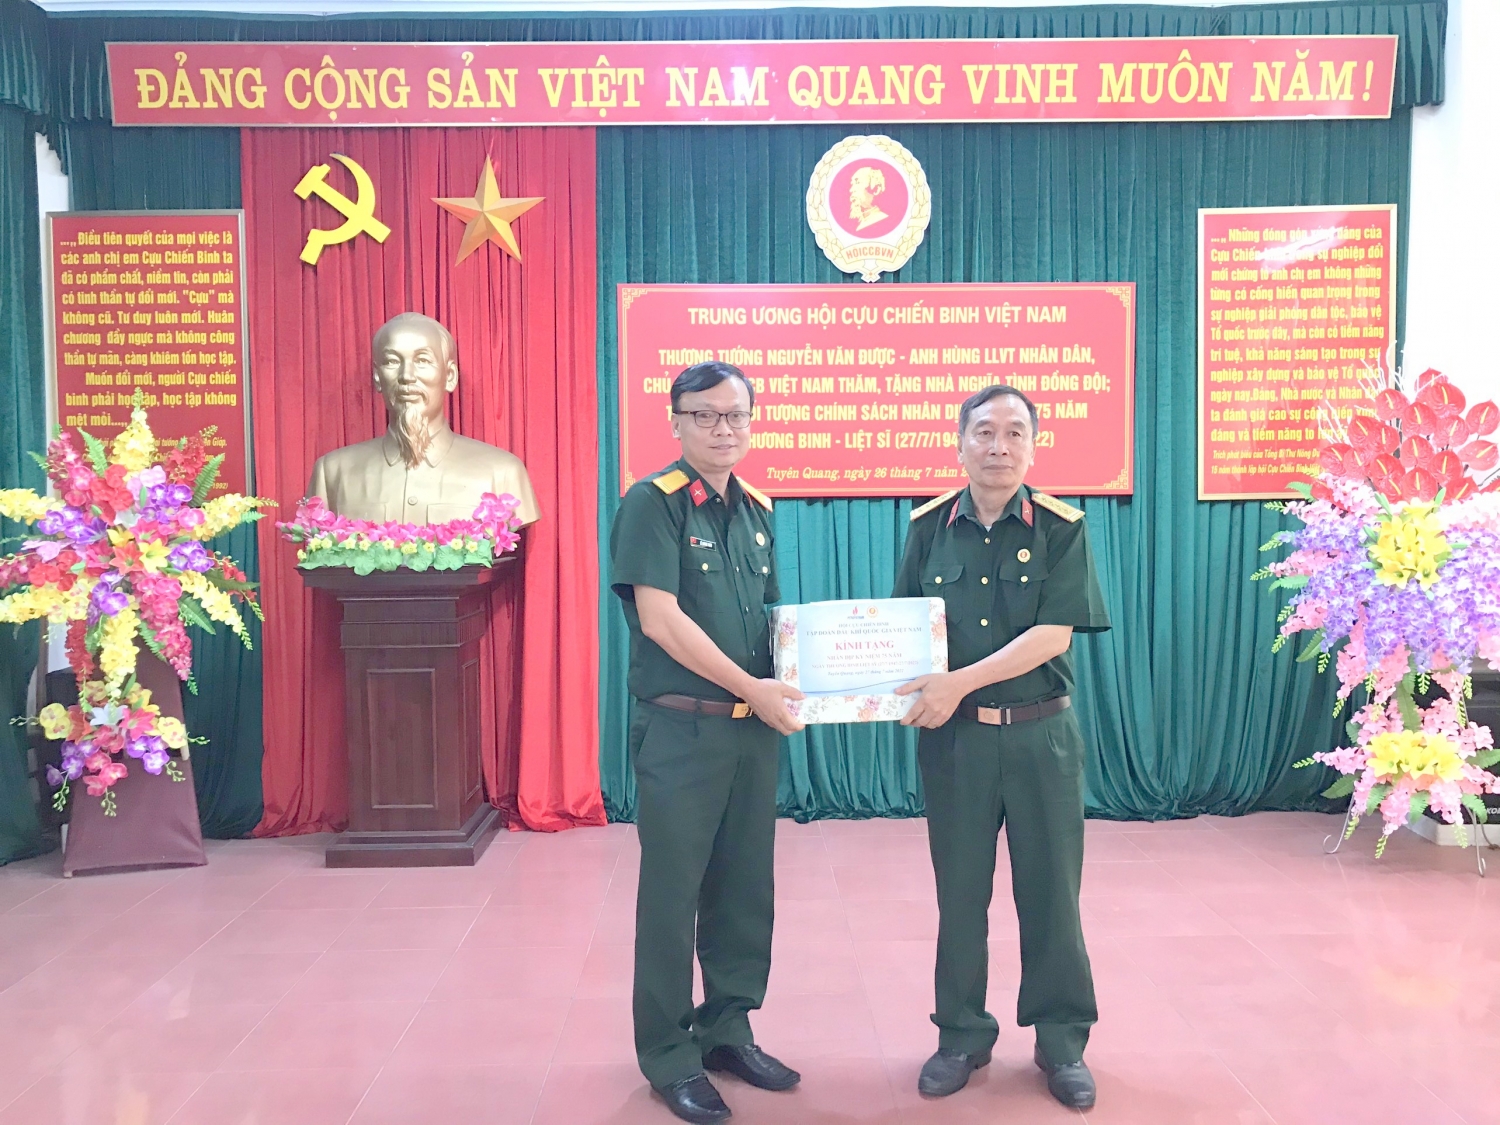 Đồng chí Lê Quang Toán - Phó Chủ tịch Hội CCB Tập đoàn trao quà cho các đối tượng chính sách và Hội CCB tỉnh Tuyên Quang